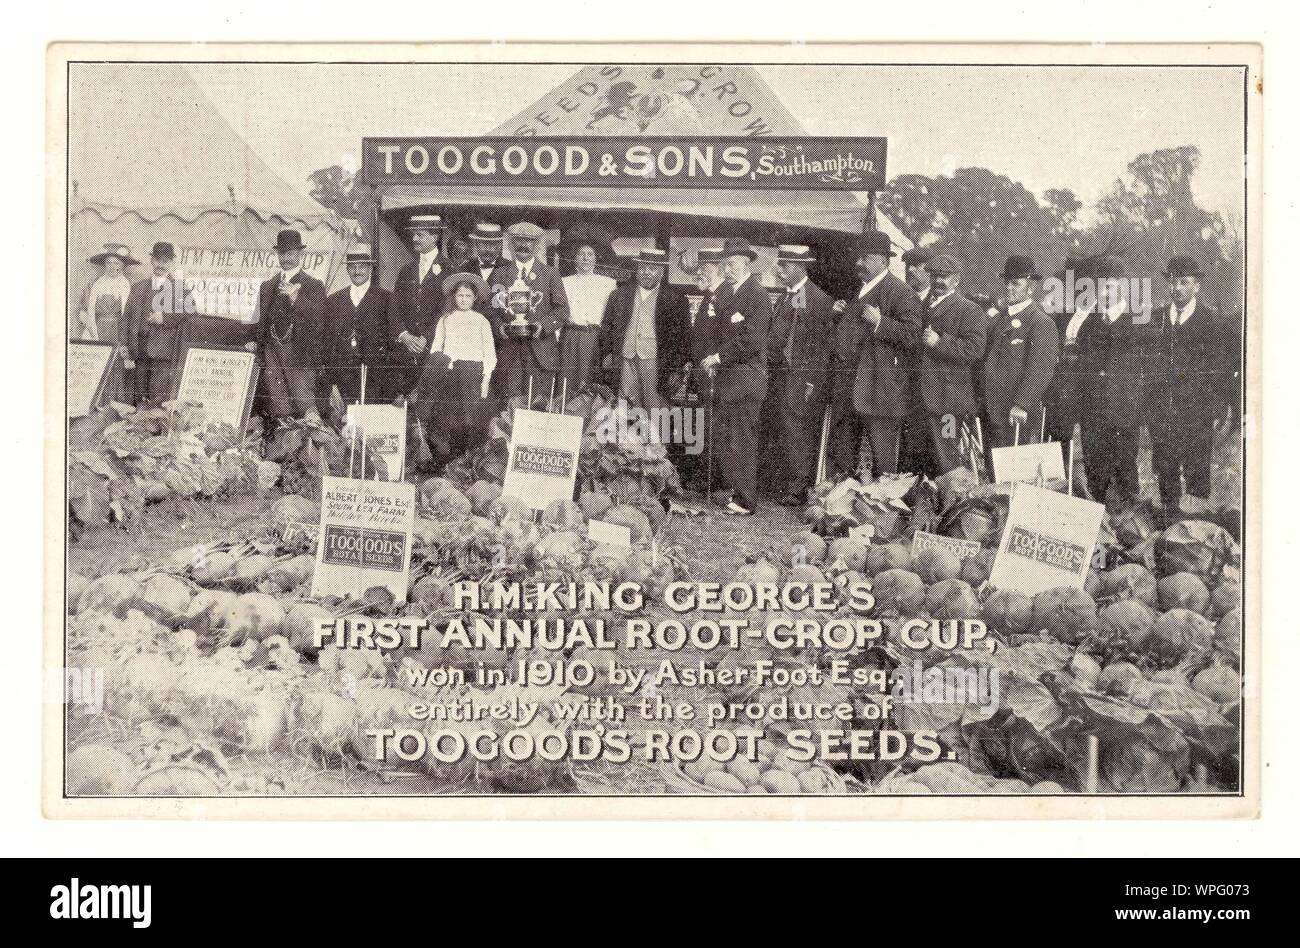 Original Anfang des 20. Jahrhunderts Toogoot & Sons, Saatgutfirma, Postkarte für Saatgutkatalog Bestellung, Darstellung von King George's Root Crop Cup, gewonnen im Jahr 1910, Karte ist ca. 1911, Großbritannien Stockfoto